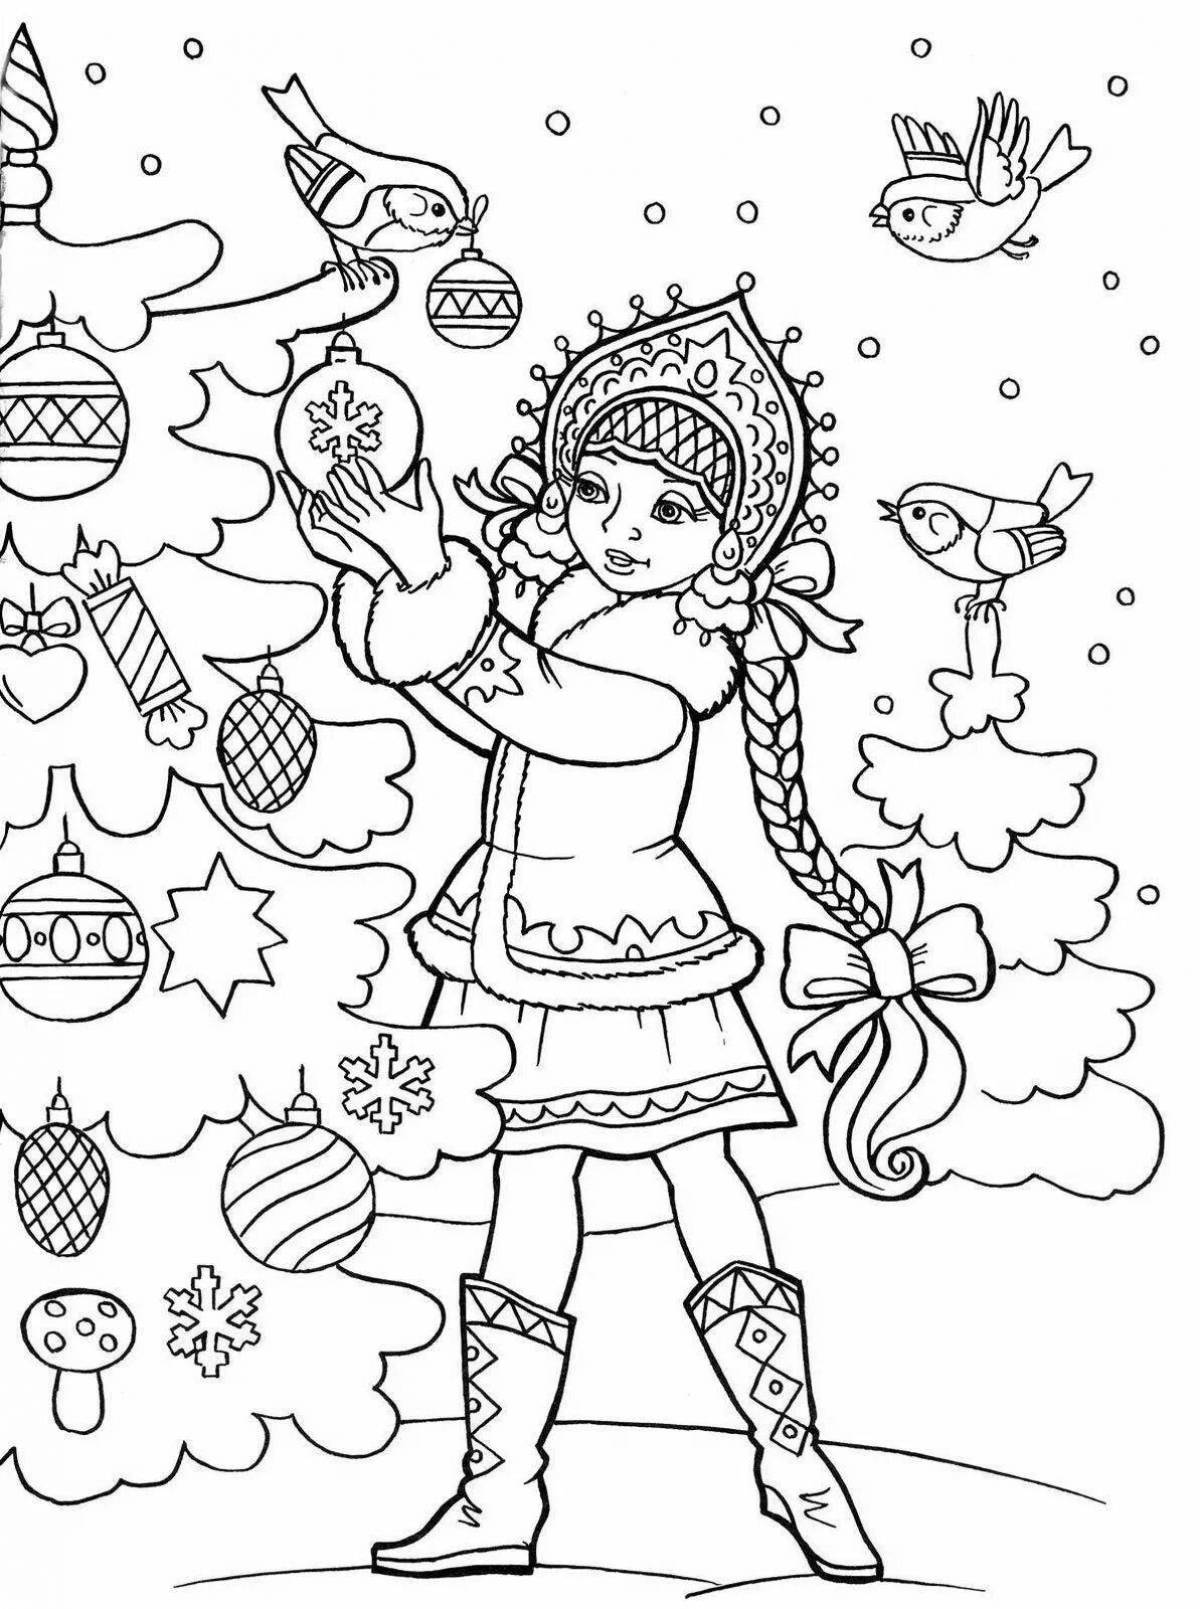 Attractive snow maiden coloring book